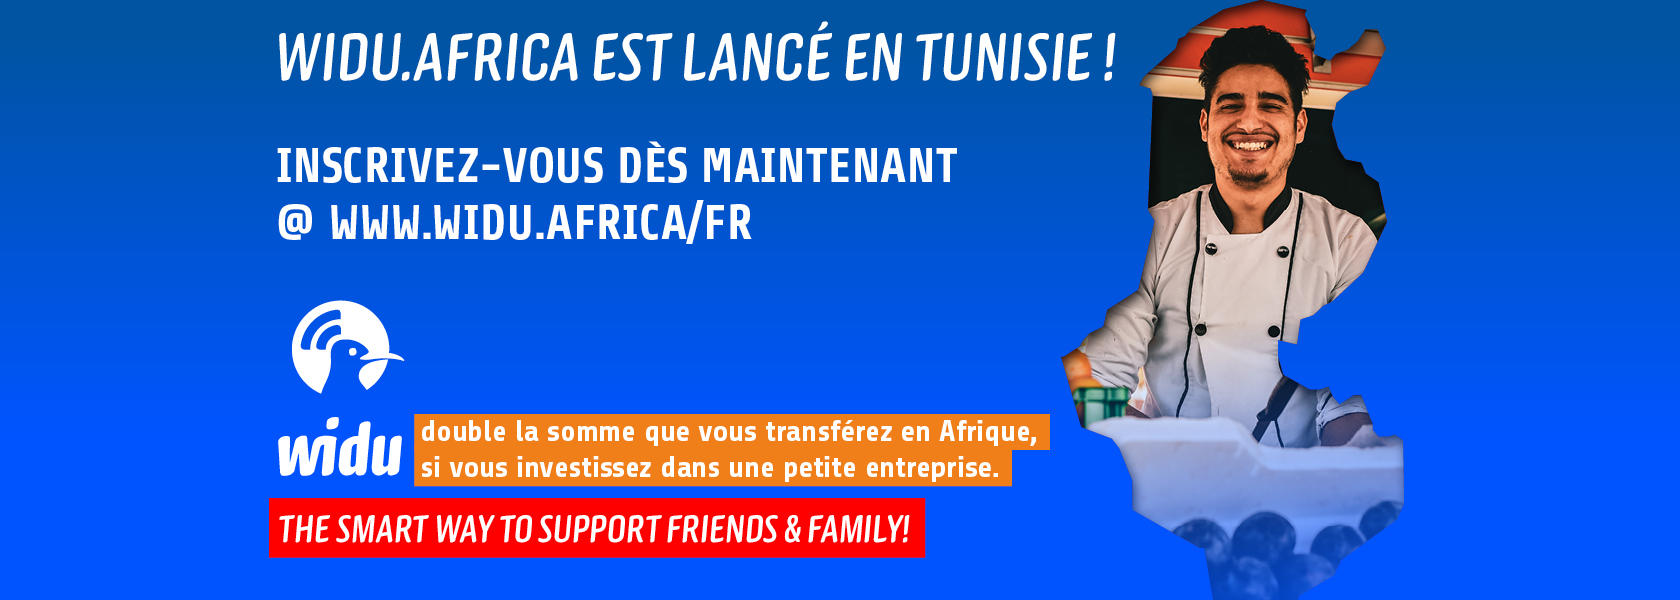 WIDU Website Header_Tunesien-Start-new_FR